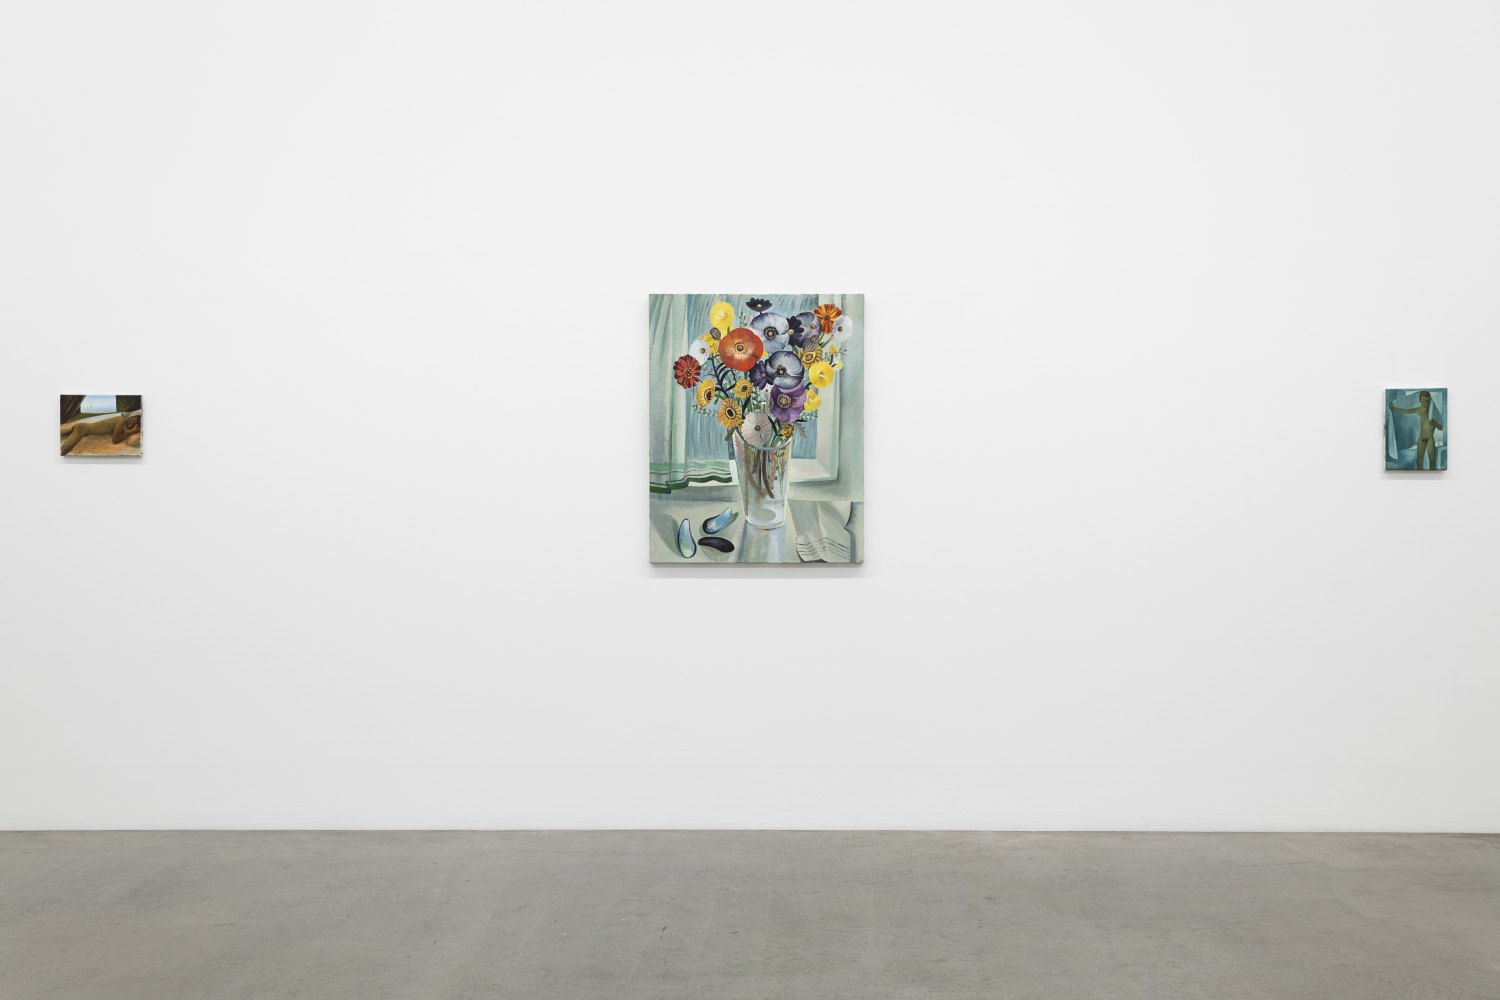 Installation view, Louis Fratino, Die bunten Tage, Galerie Neu, Berlin, 2022 